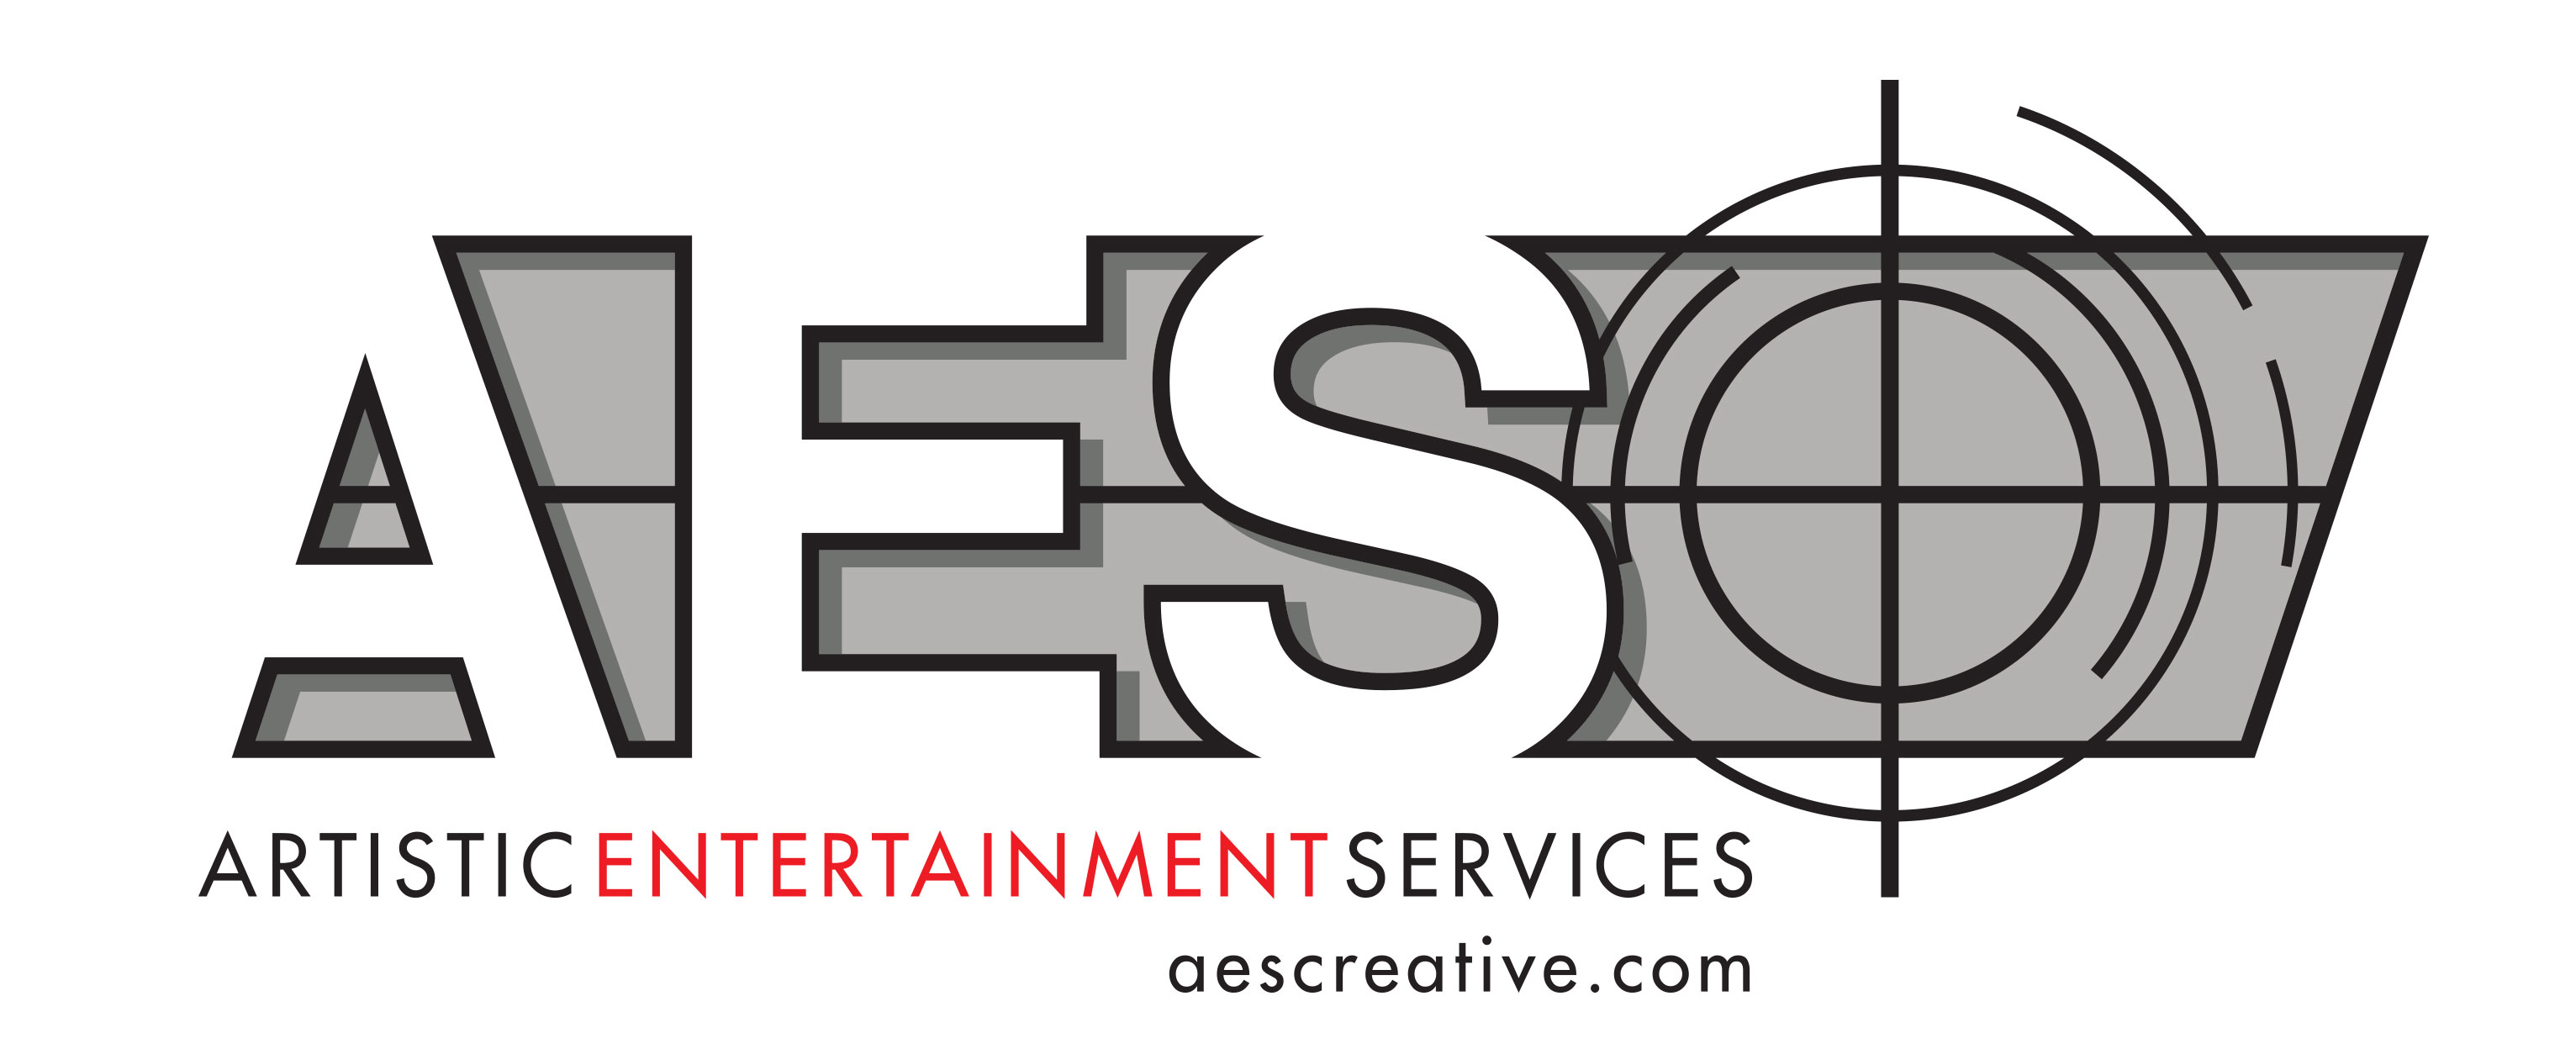 Artistic Entertainment Services 